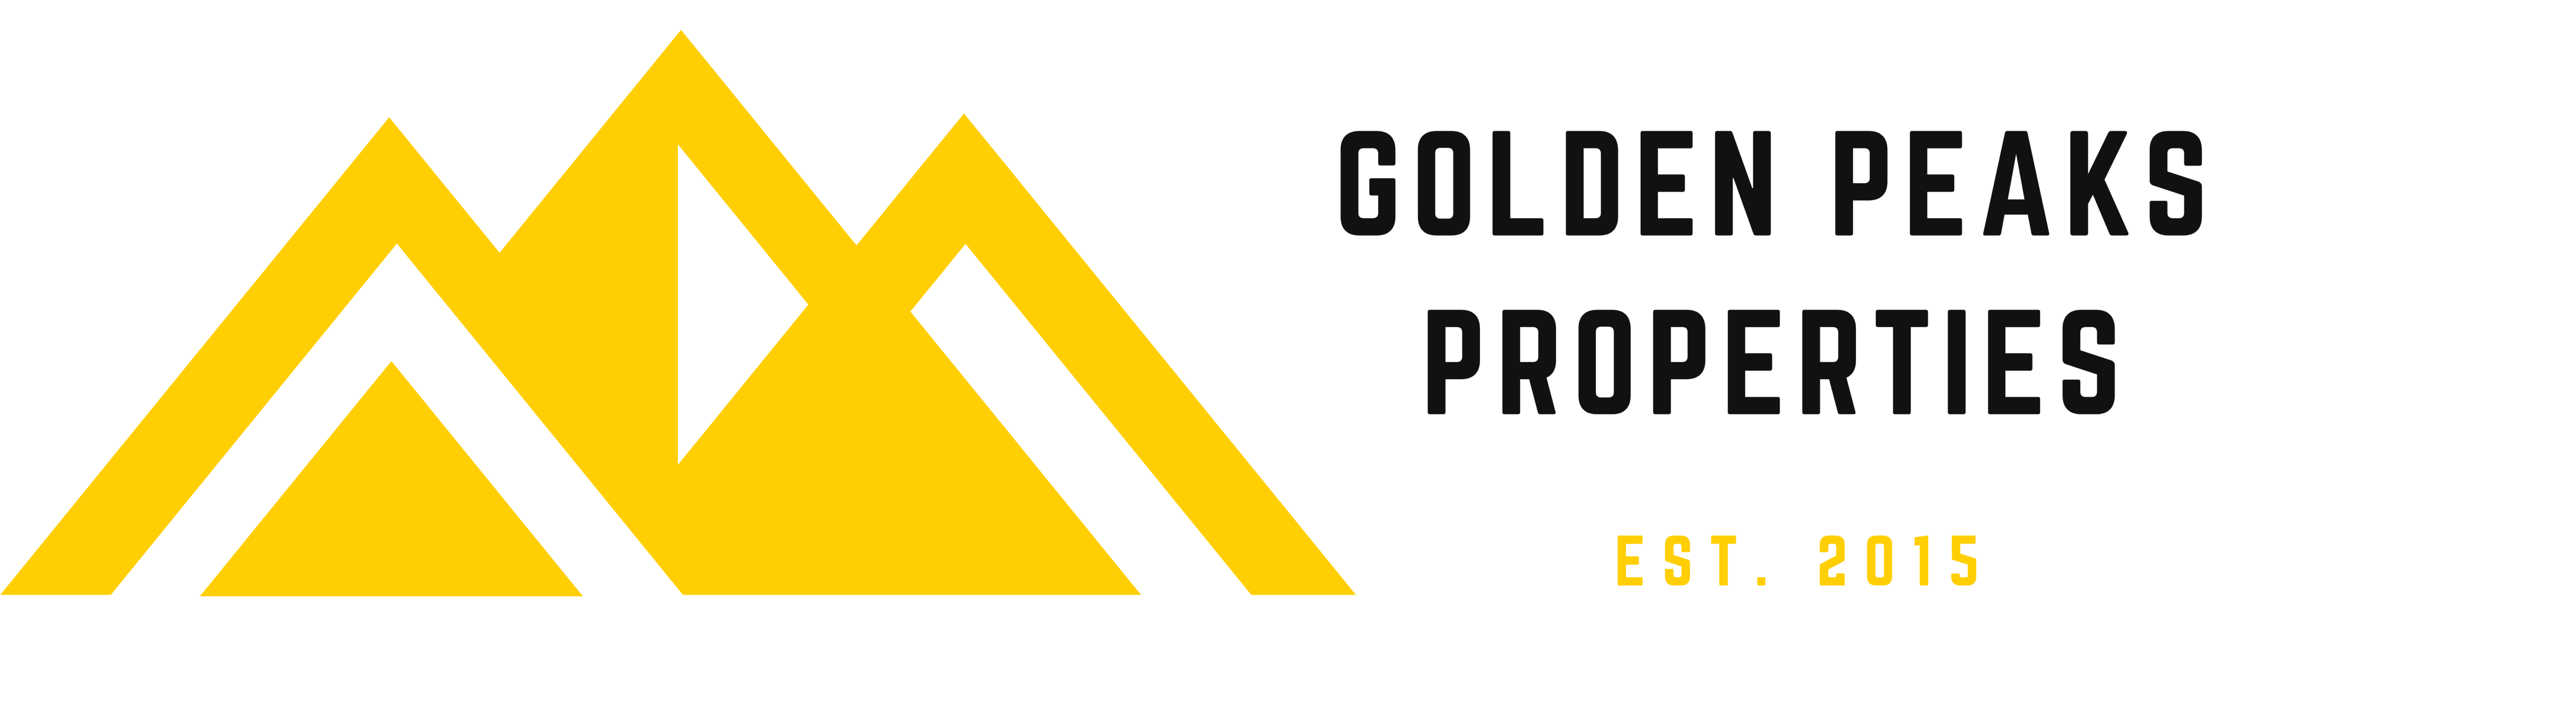 Golden Peaks Properties logo